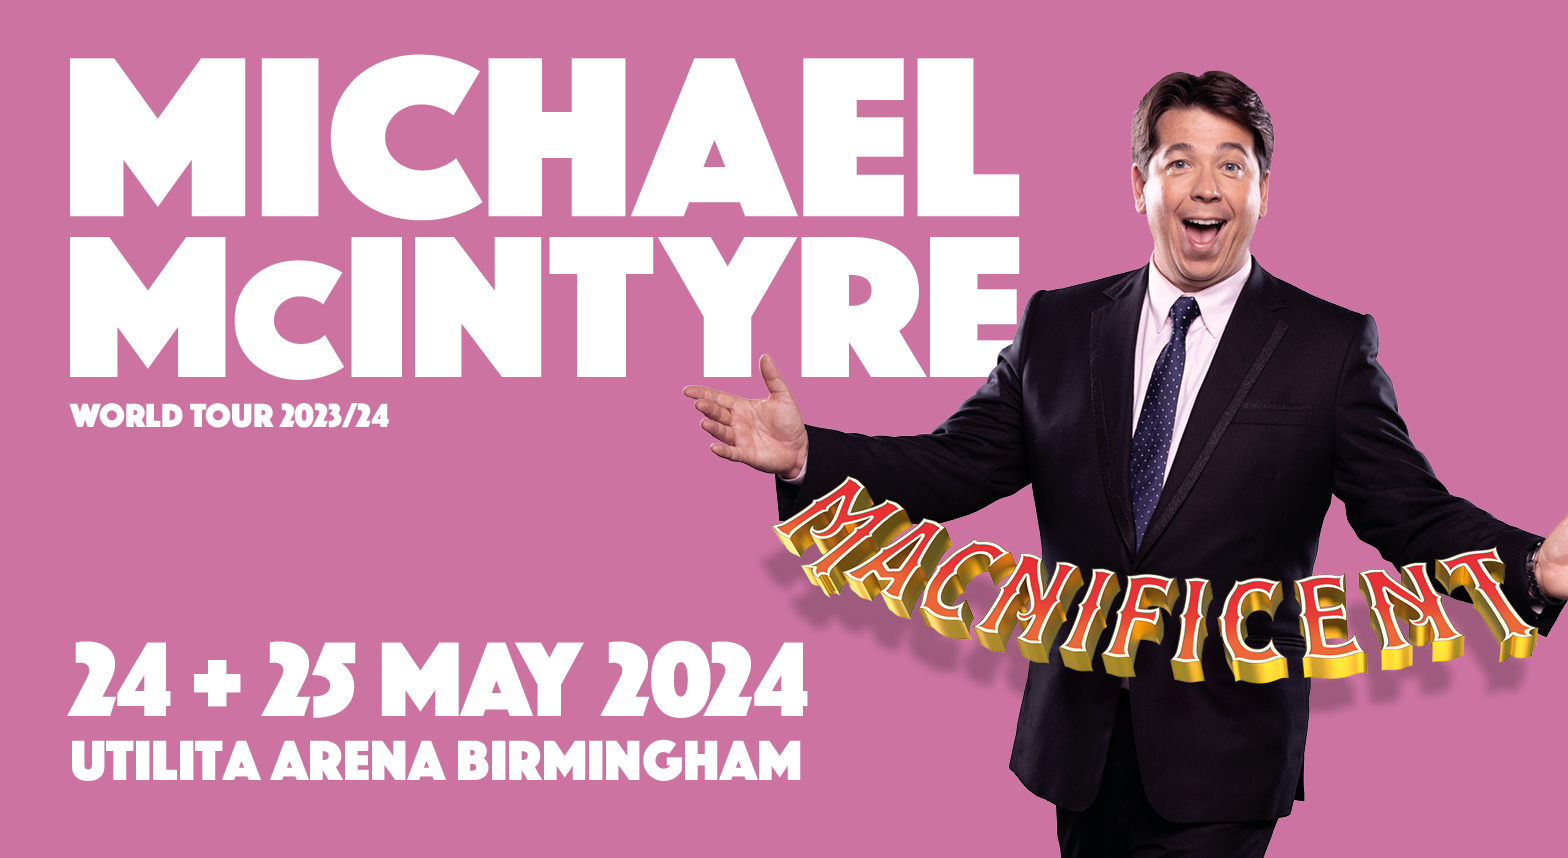 Michael McIntyre Macnificent Tour